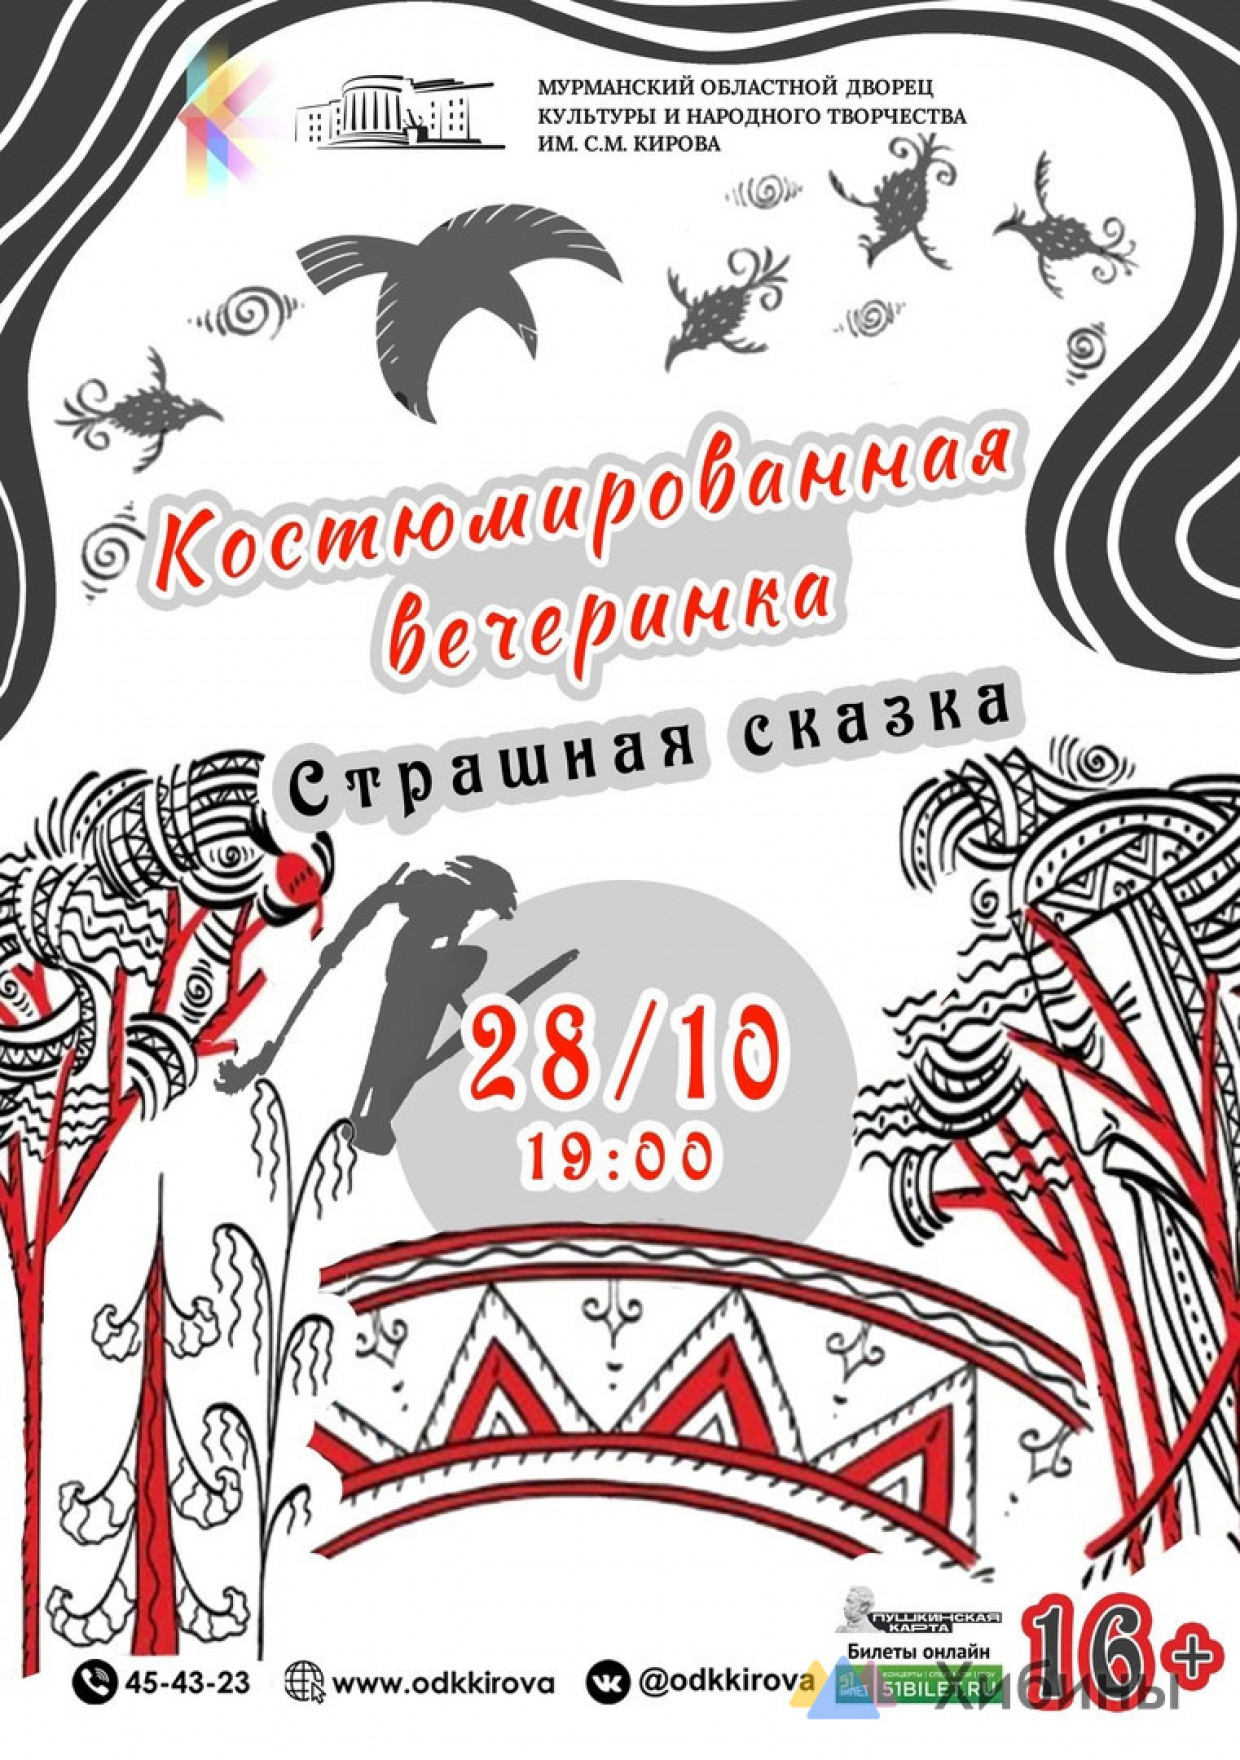 В Мурманске состоится вечеринка «Страшная сказка»